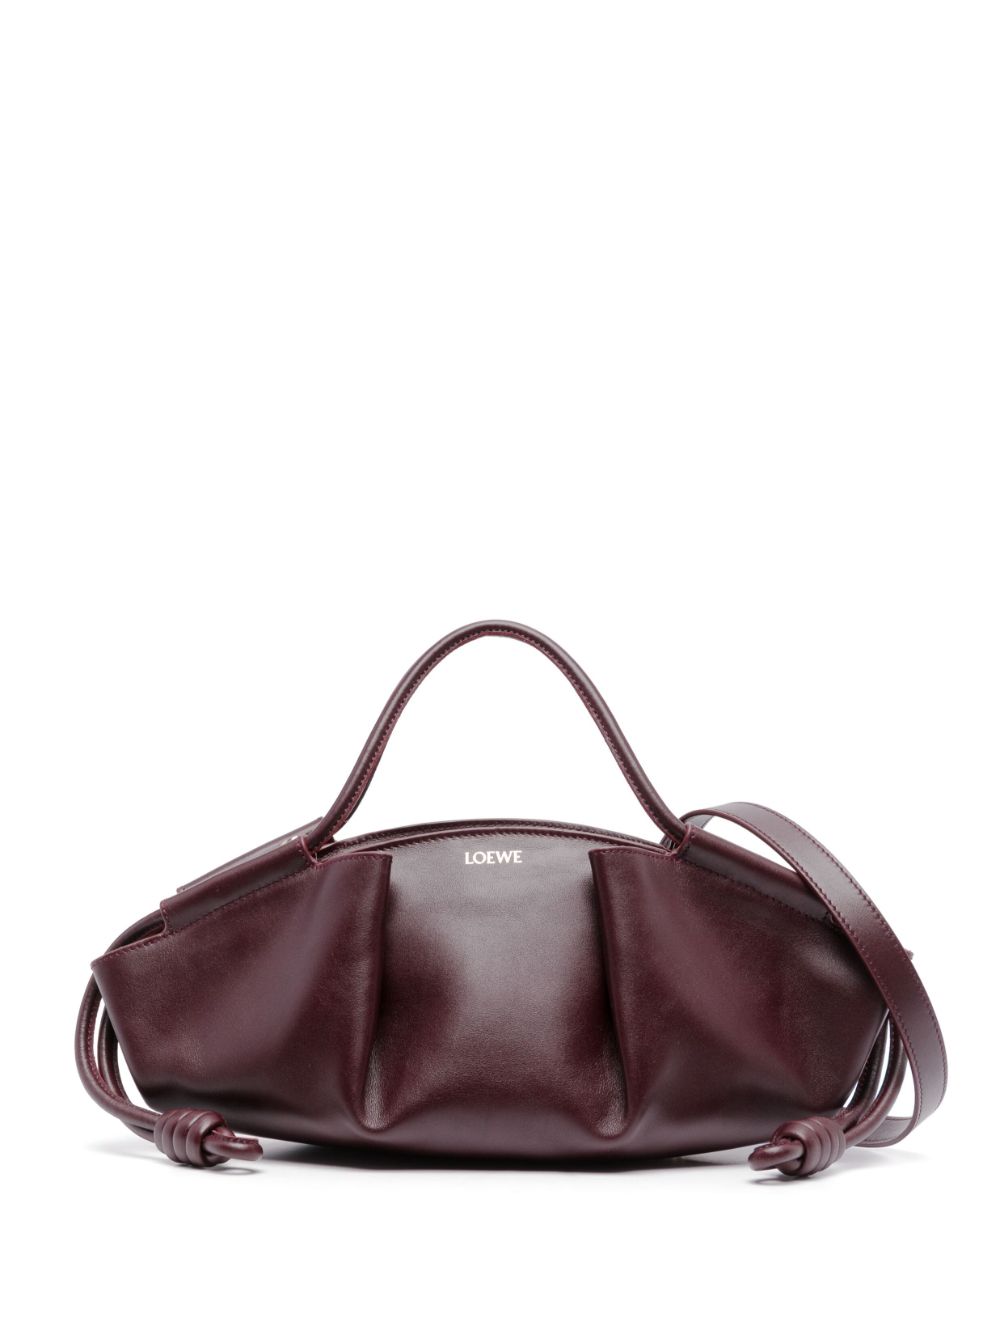 Loewe LOEWE- Paseo Small Leather Handbag